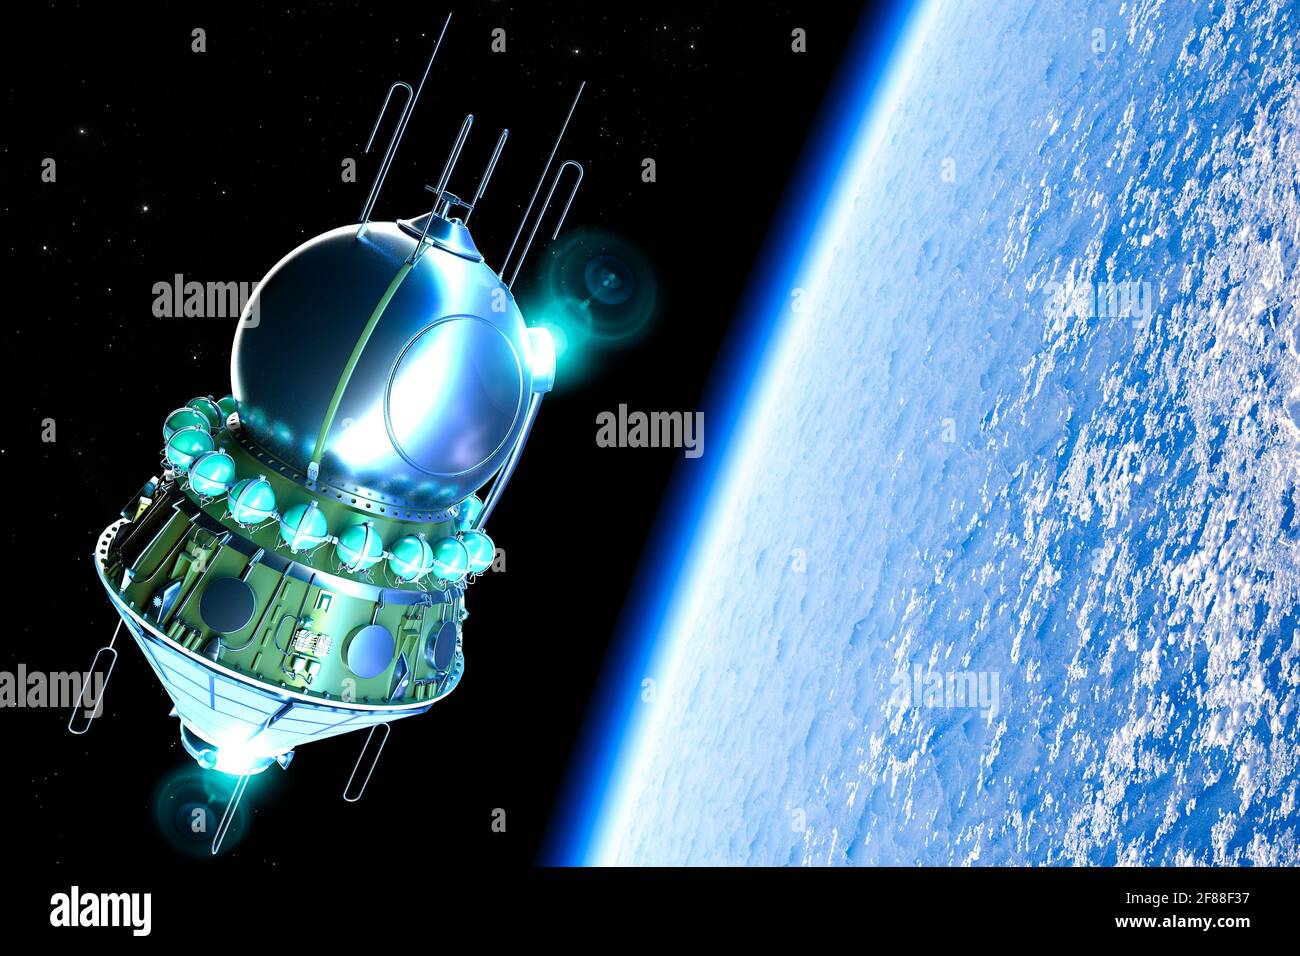 La nave espacial Vostok, era un tipo de nave espacial construida por la Unión Soviética. El primer vuelo espacial humano del cosmonauta soviético Yuri Gagarin Foto de stock